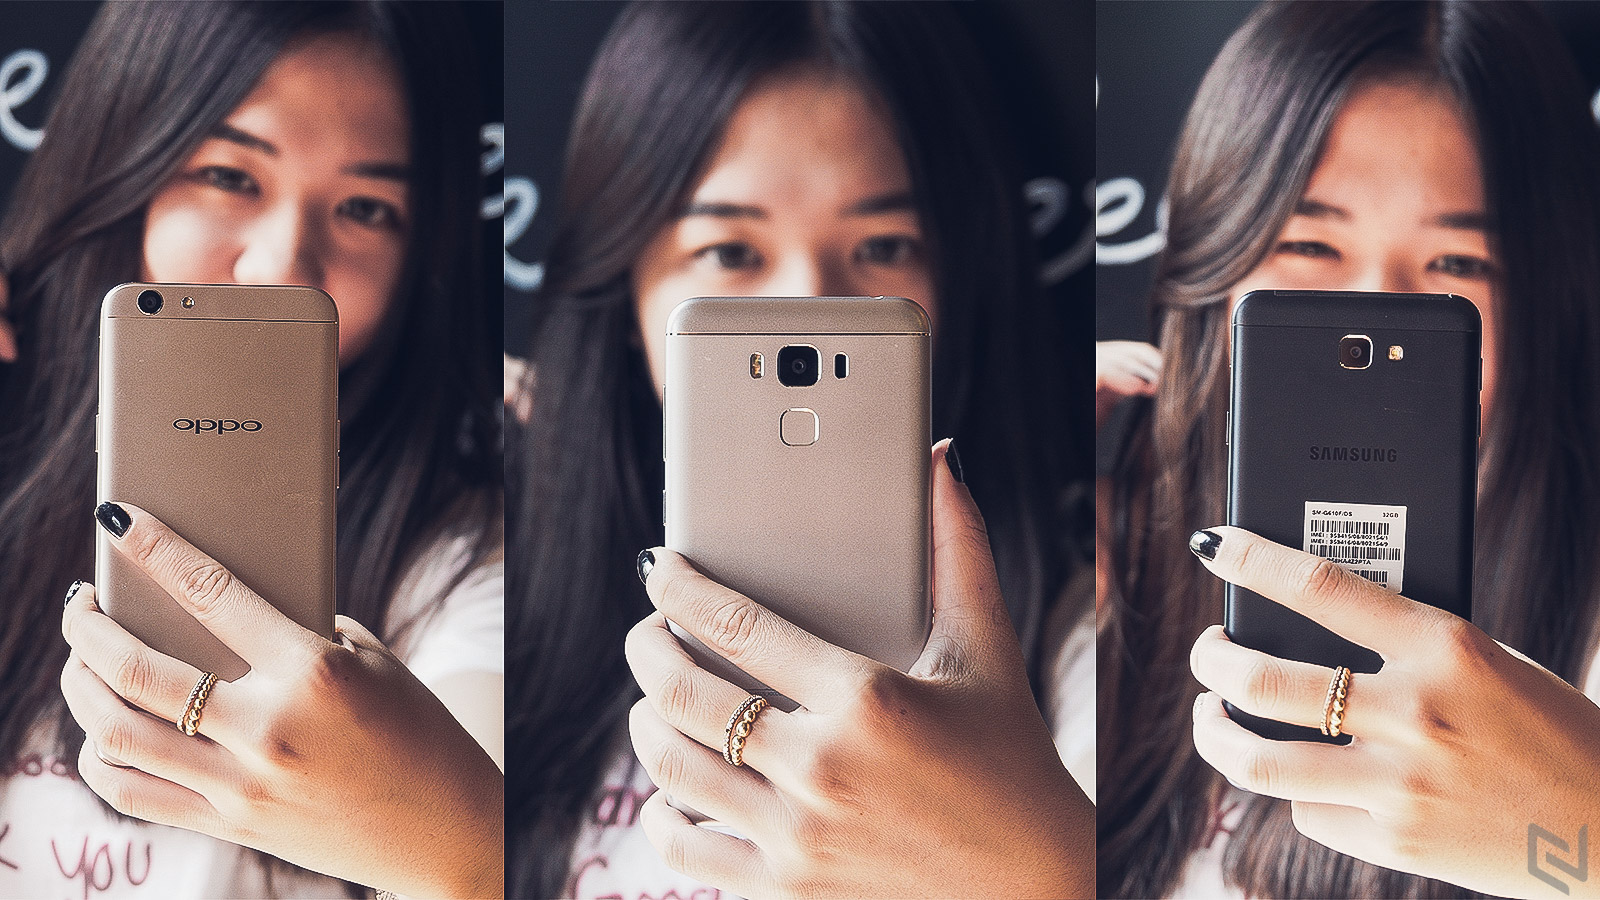 So sánh camera ZenFone 3 Max 5.5" - OPPO F1s - Galaxy J7 Prime